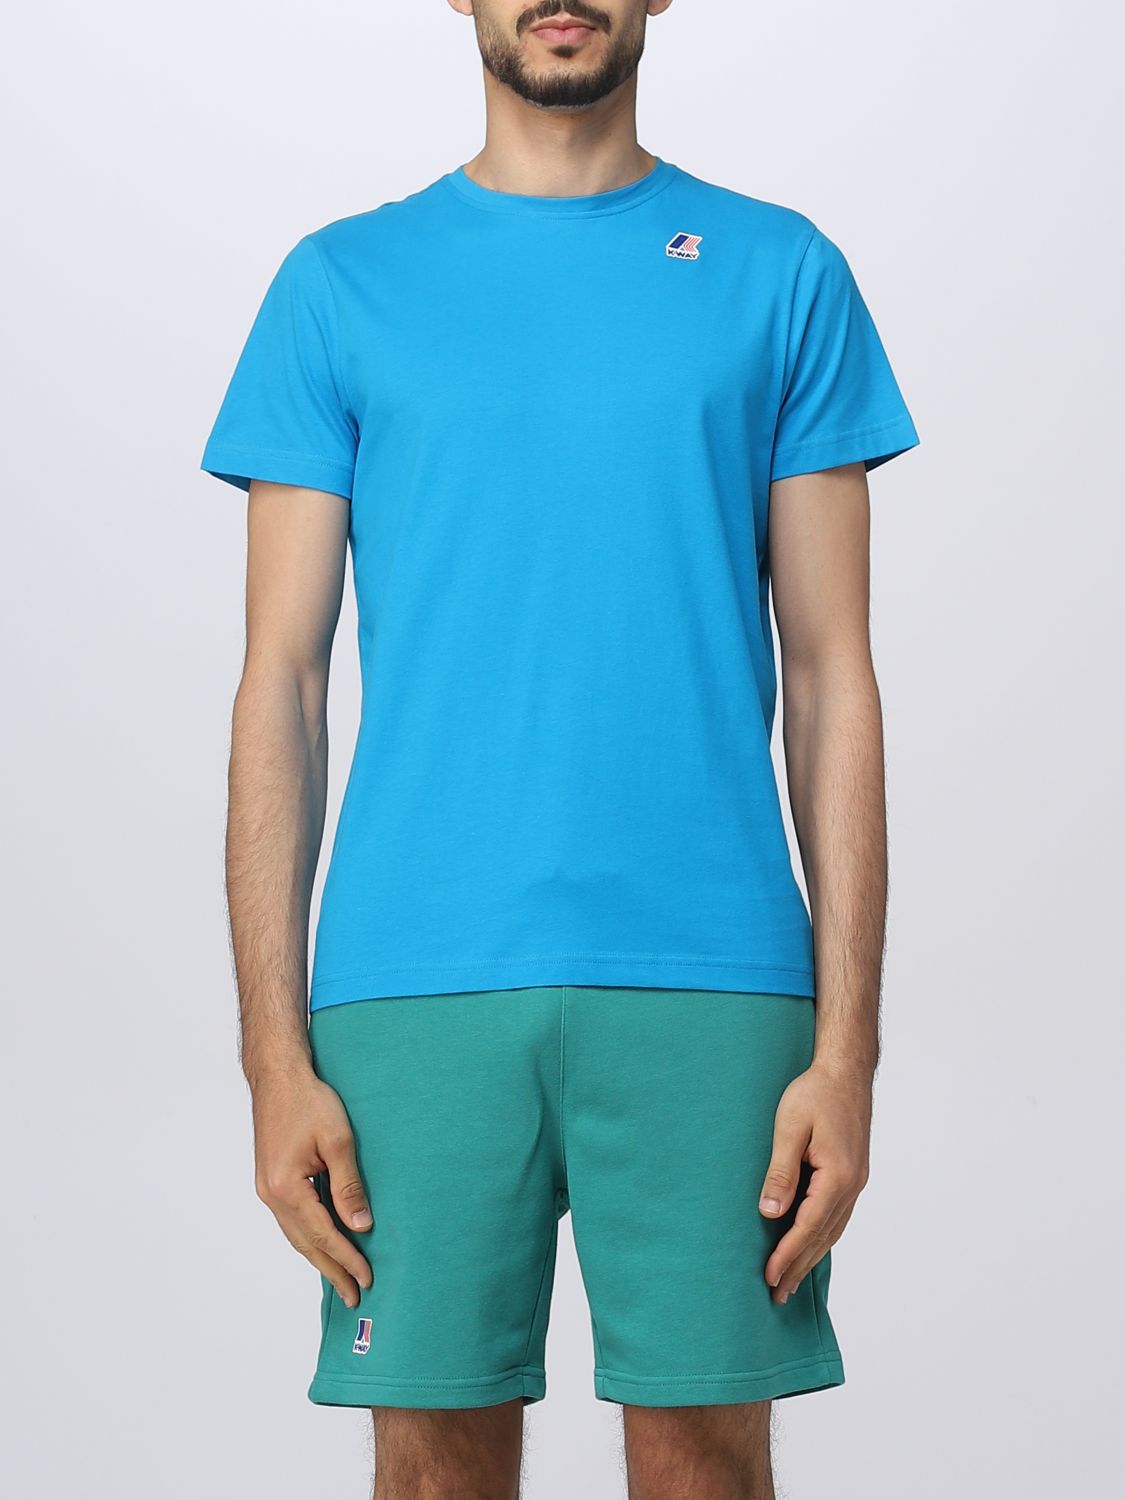 K-way T-shirt  Men Color Turquoise